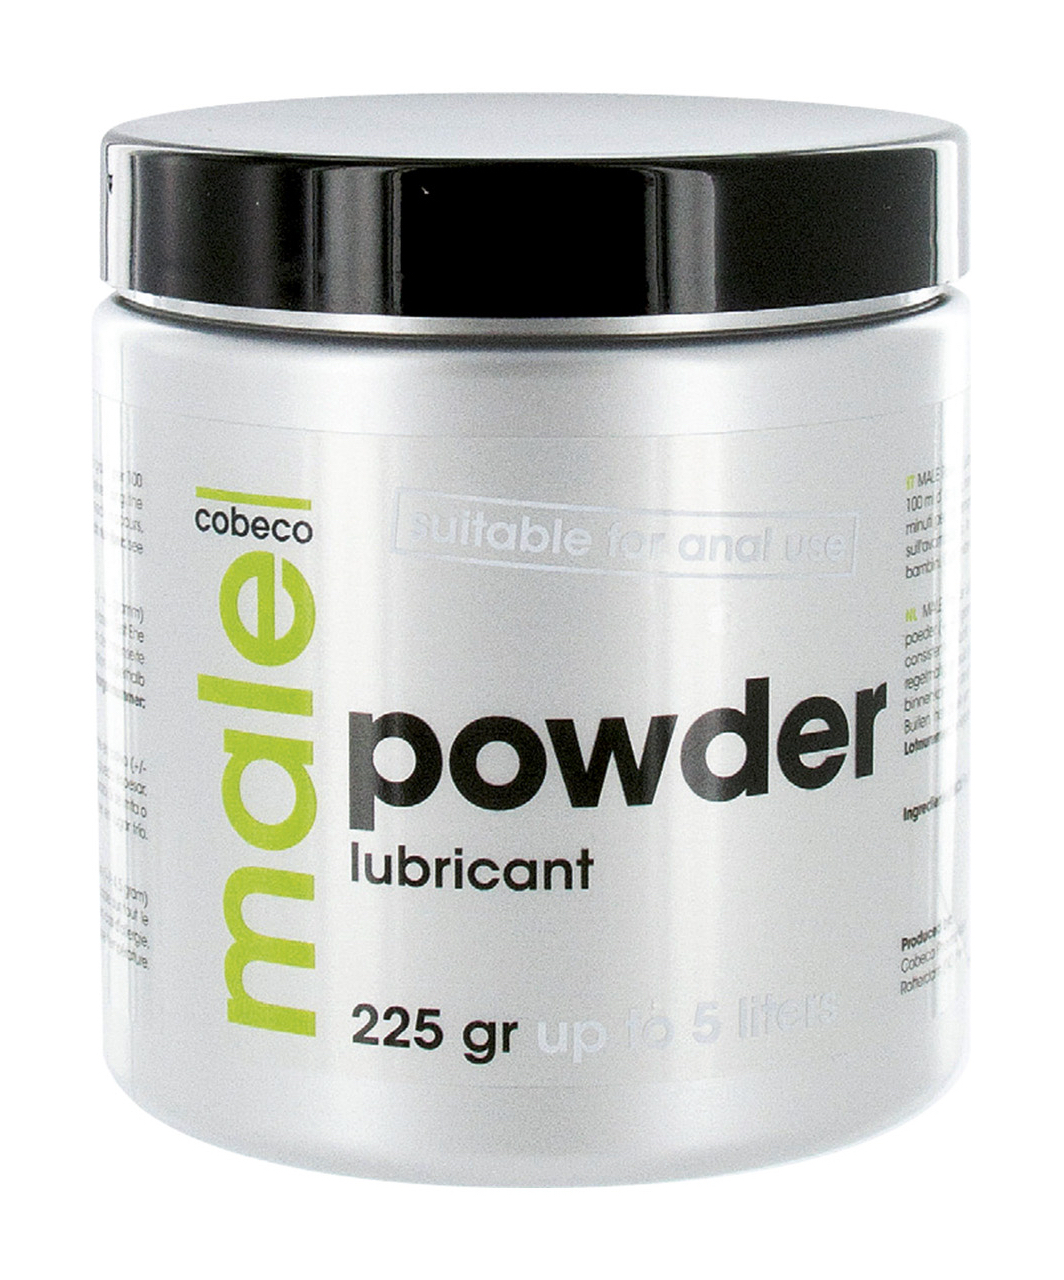 Male Powder Lubricant (225 g)